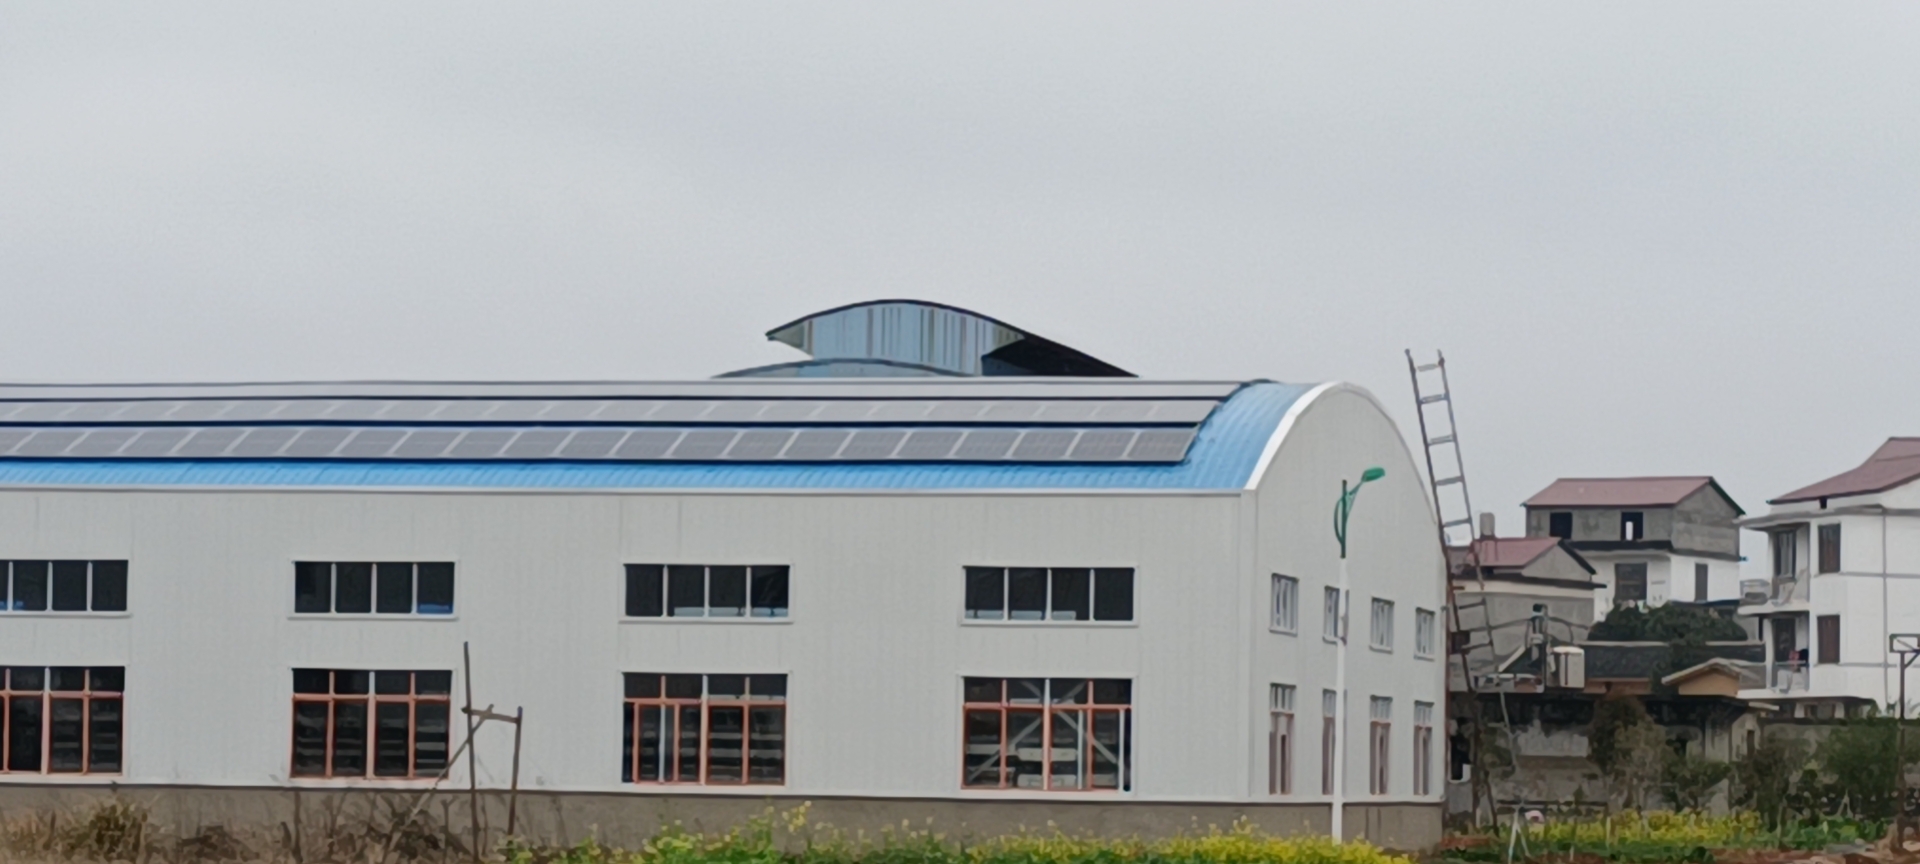 工商業屋頂分布式光伏電站